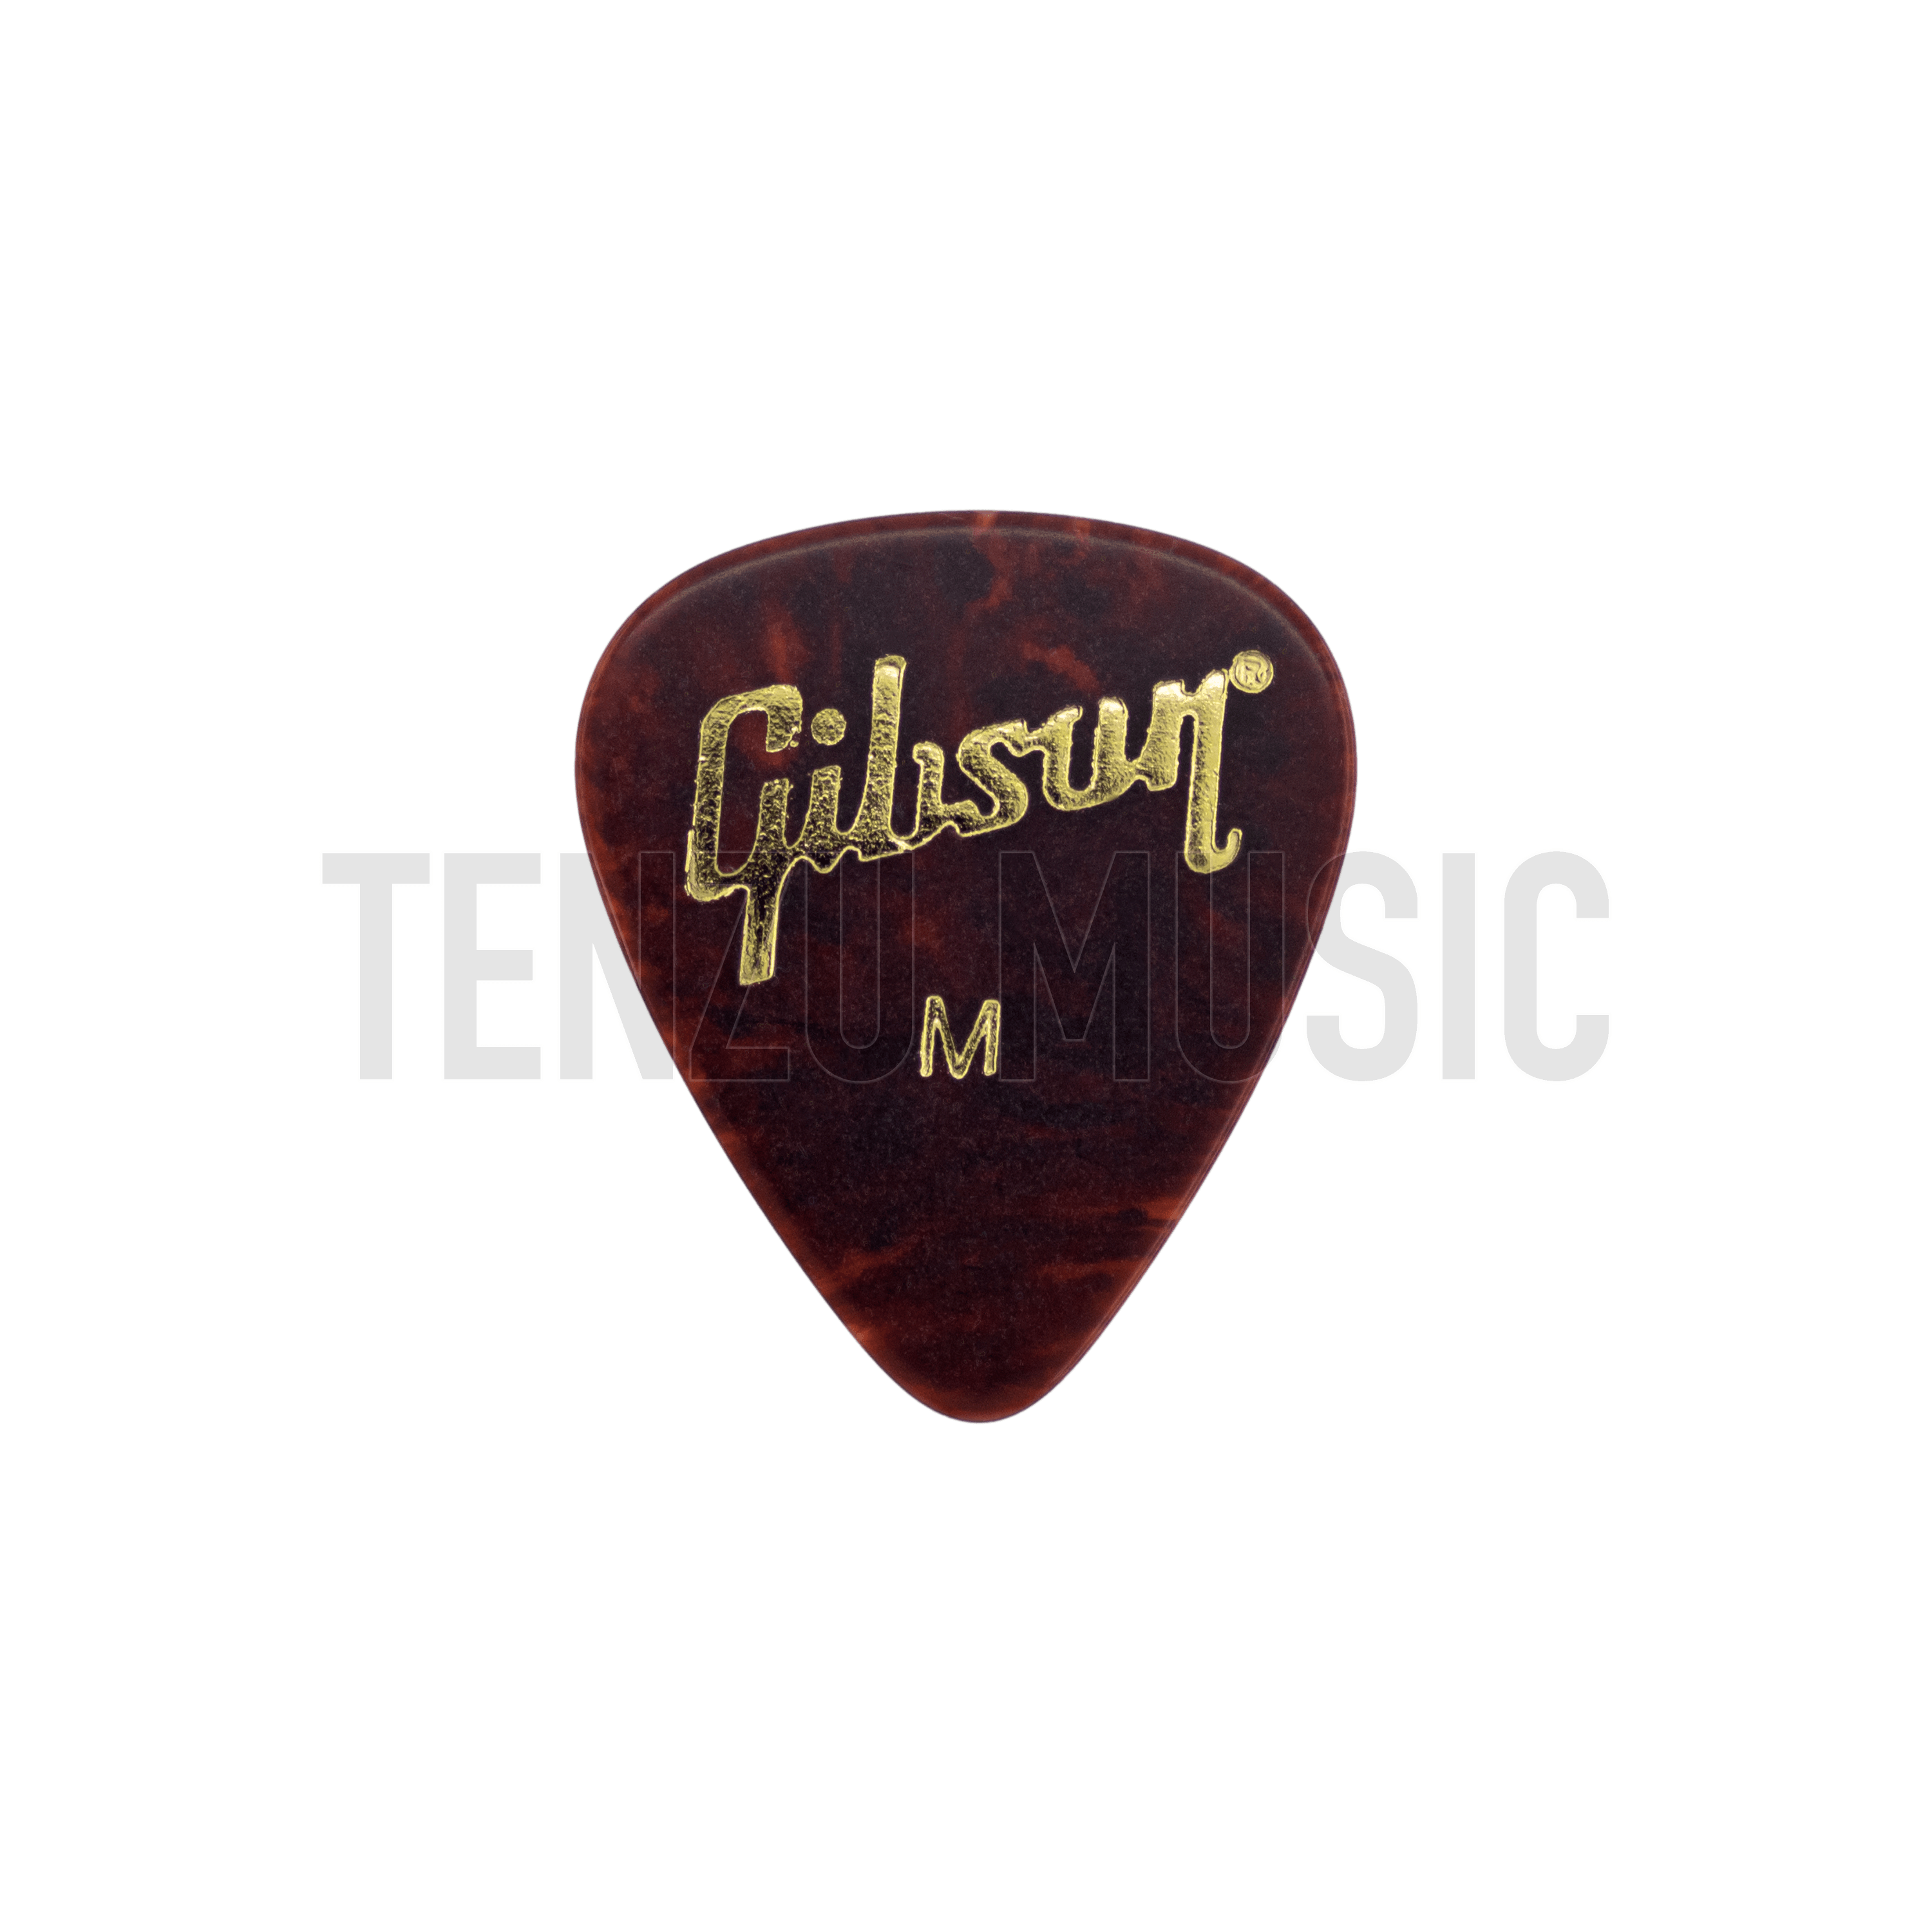 Gibson Tortoise  Medium